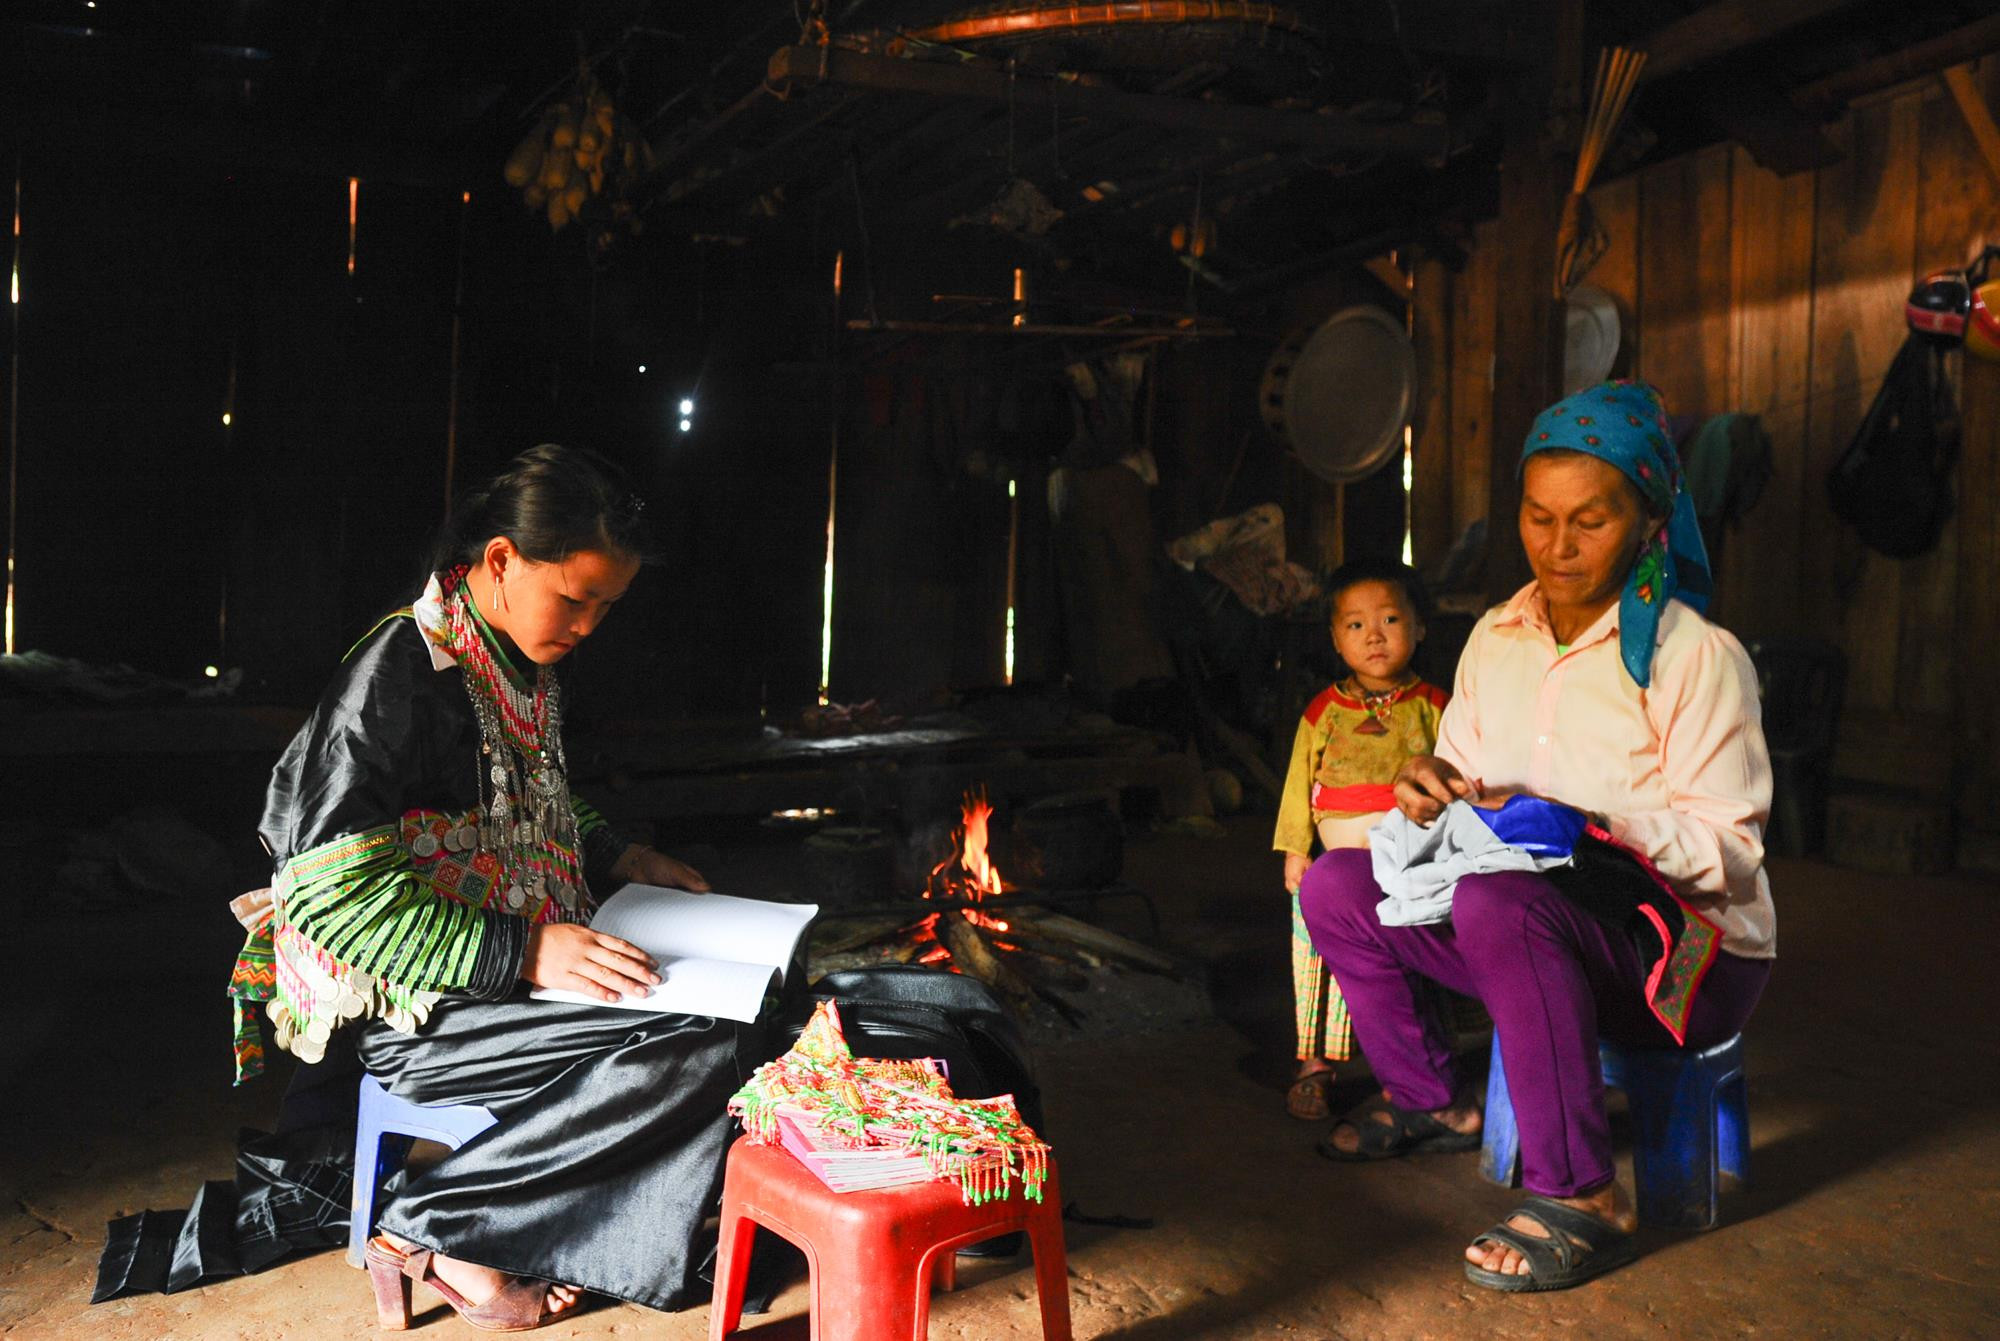 Cuộc sống của đồng bào dân tộc Mông ở huyện Quế Phong dần được cải thiện nhờ các chính sách định canh, định cư của nhà nước. Ảnh: Thành Cường.